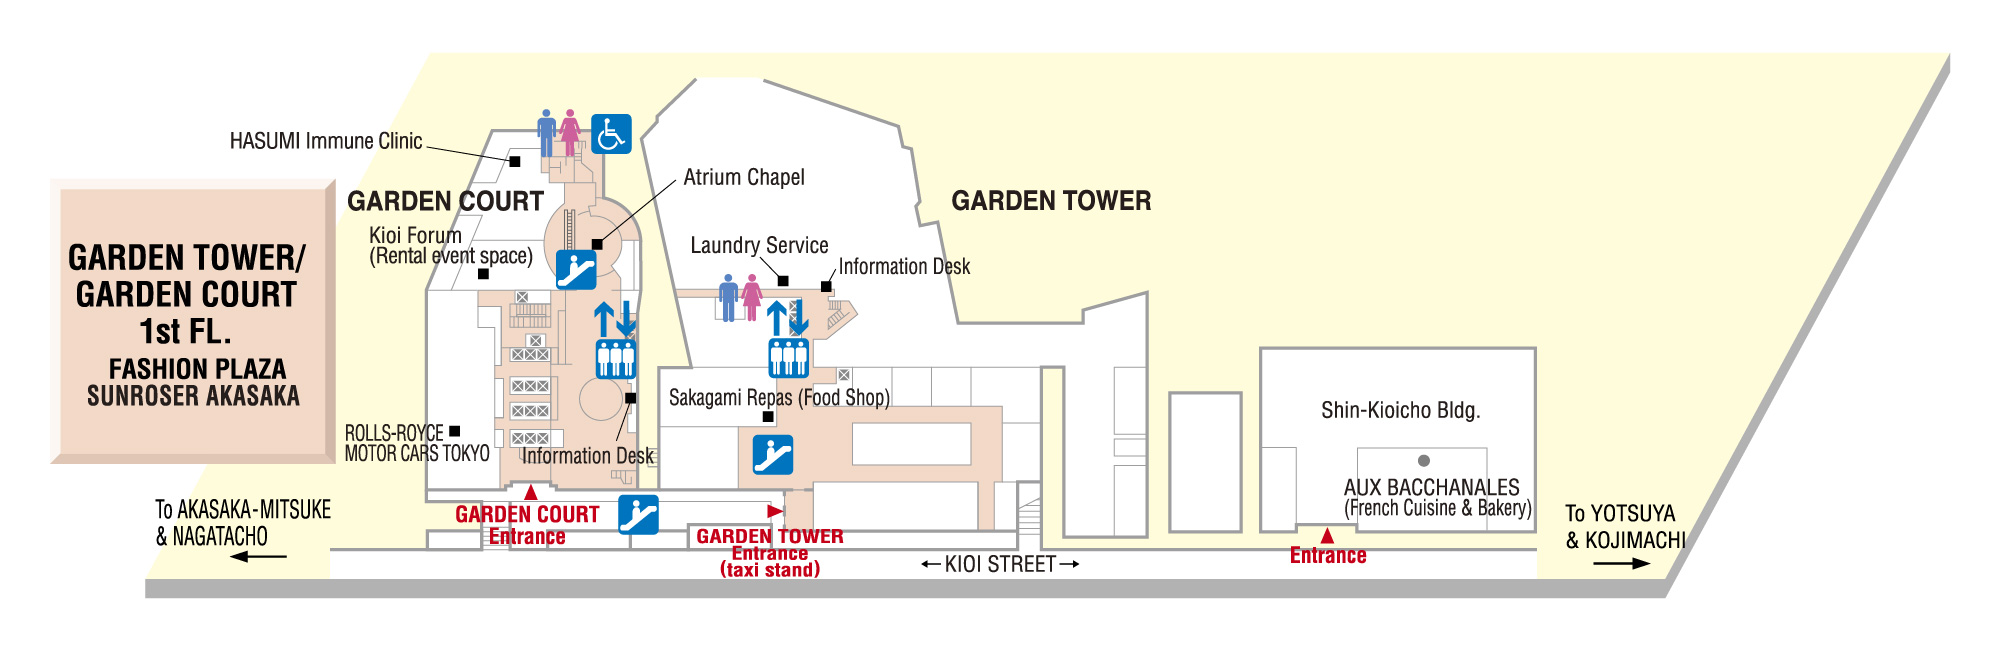 Floor Map - GARDEN TOWER/GARDEN COURT 1st FL.